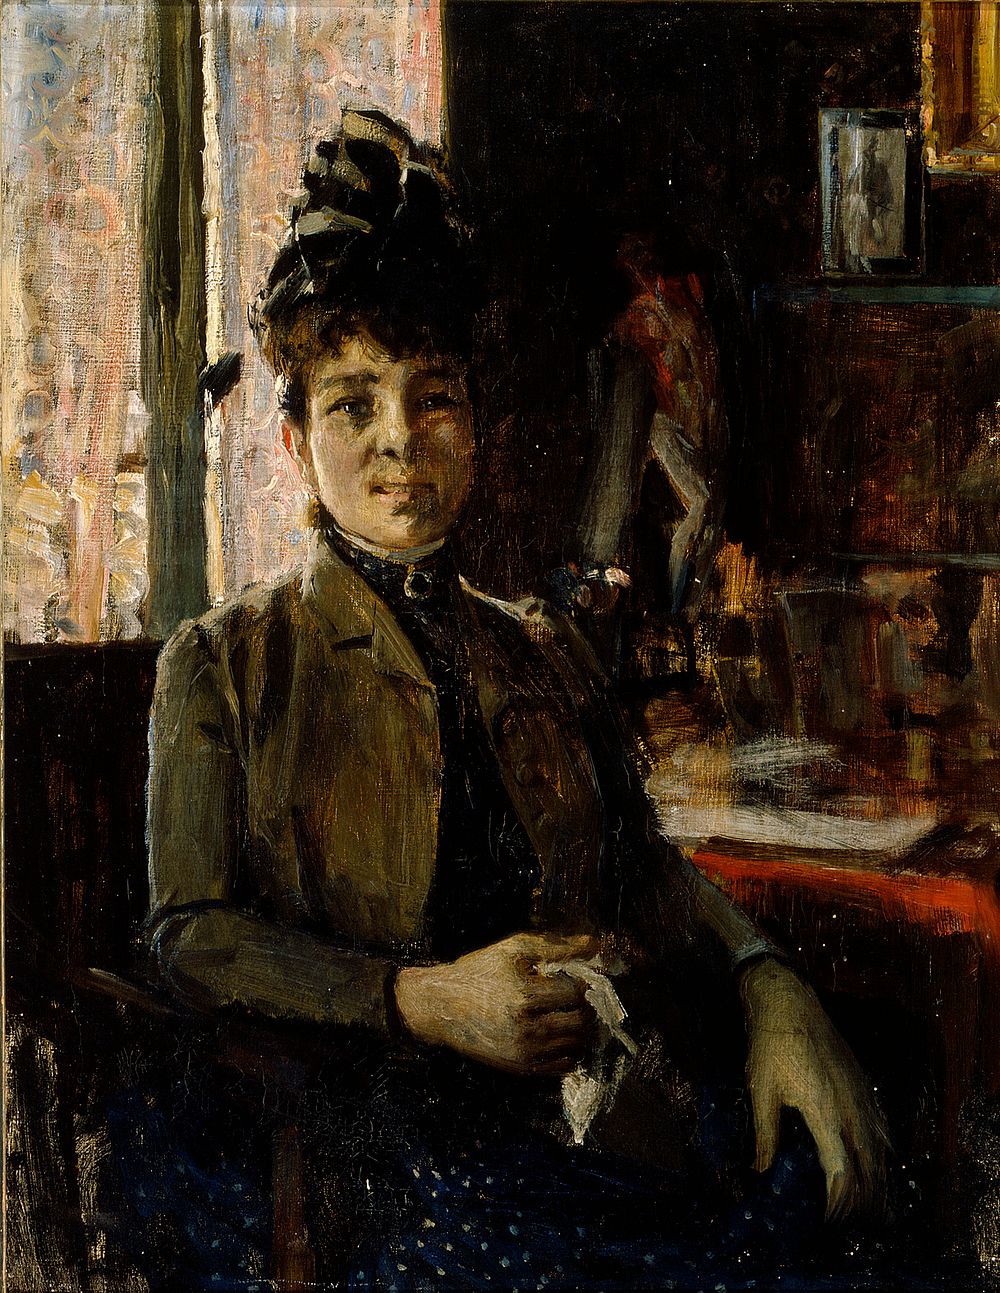 Countess berthe de vallombreuse, 1888